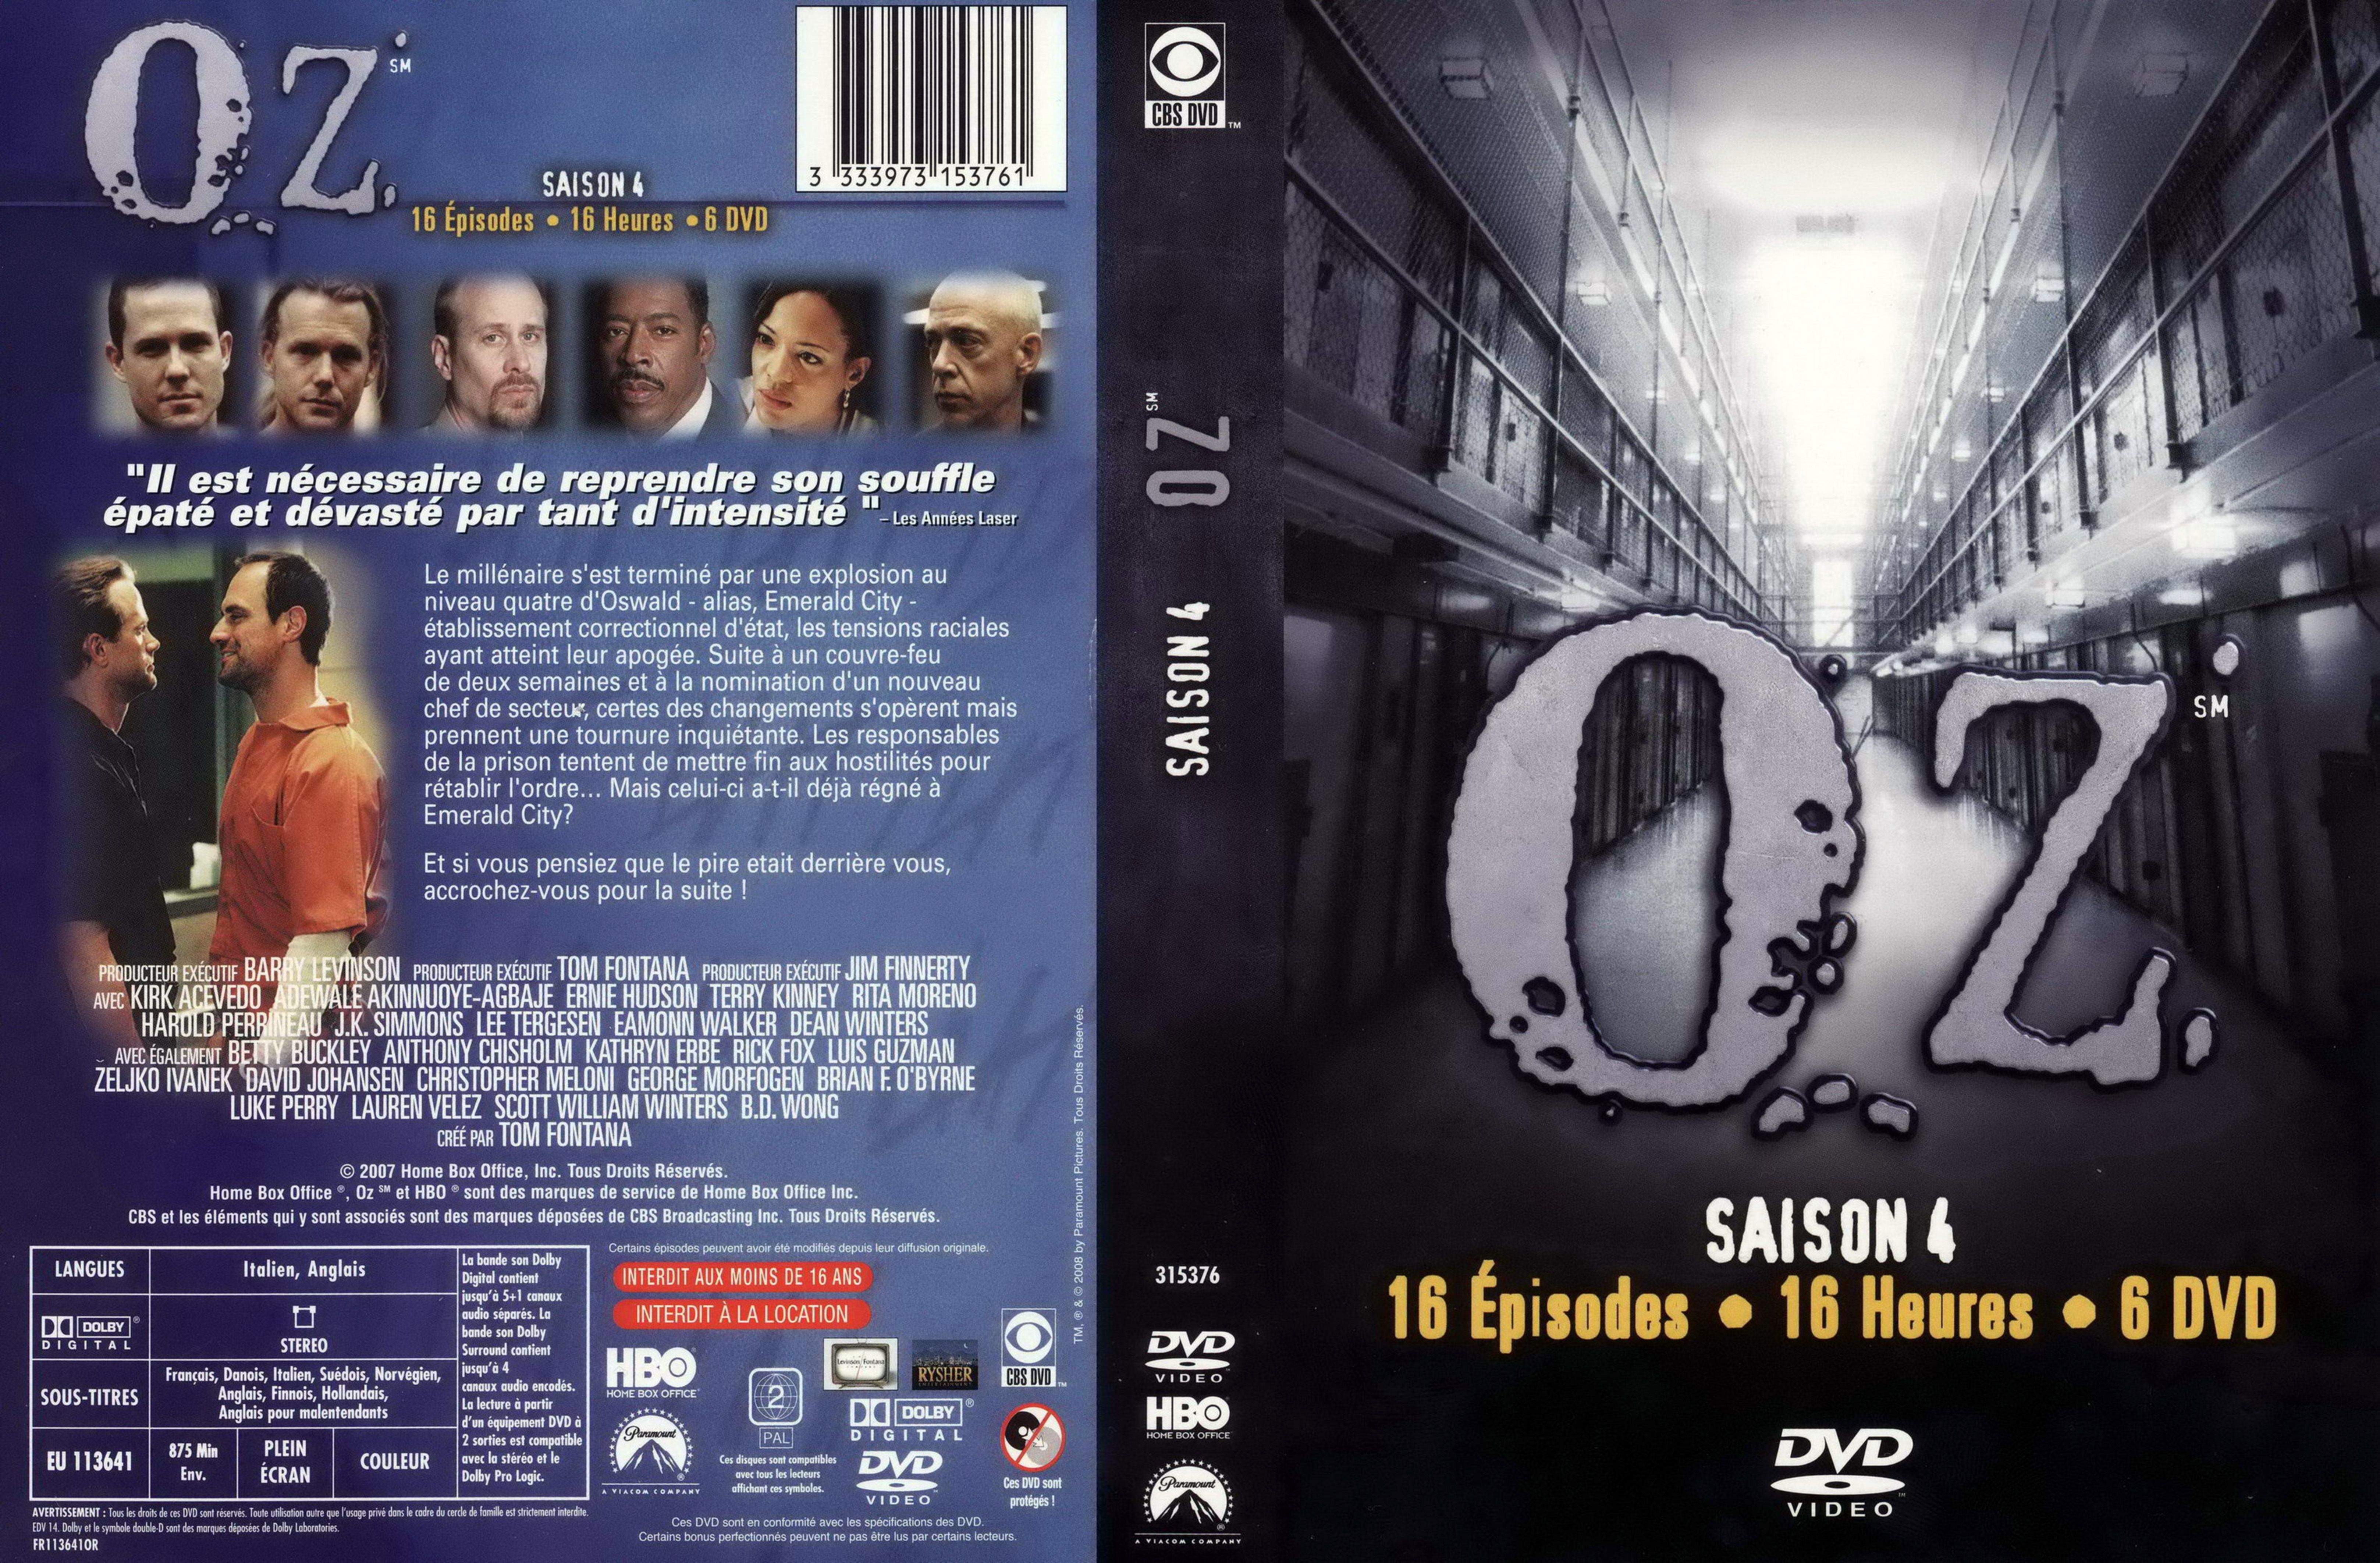 Jaquette DVD OZ saison 4 COFFRET